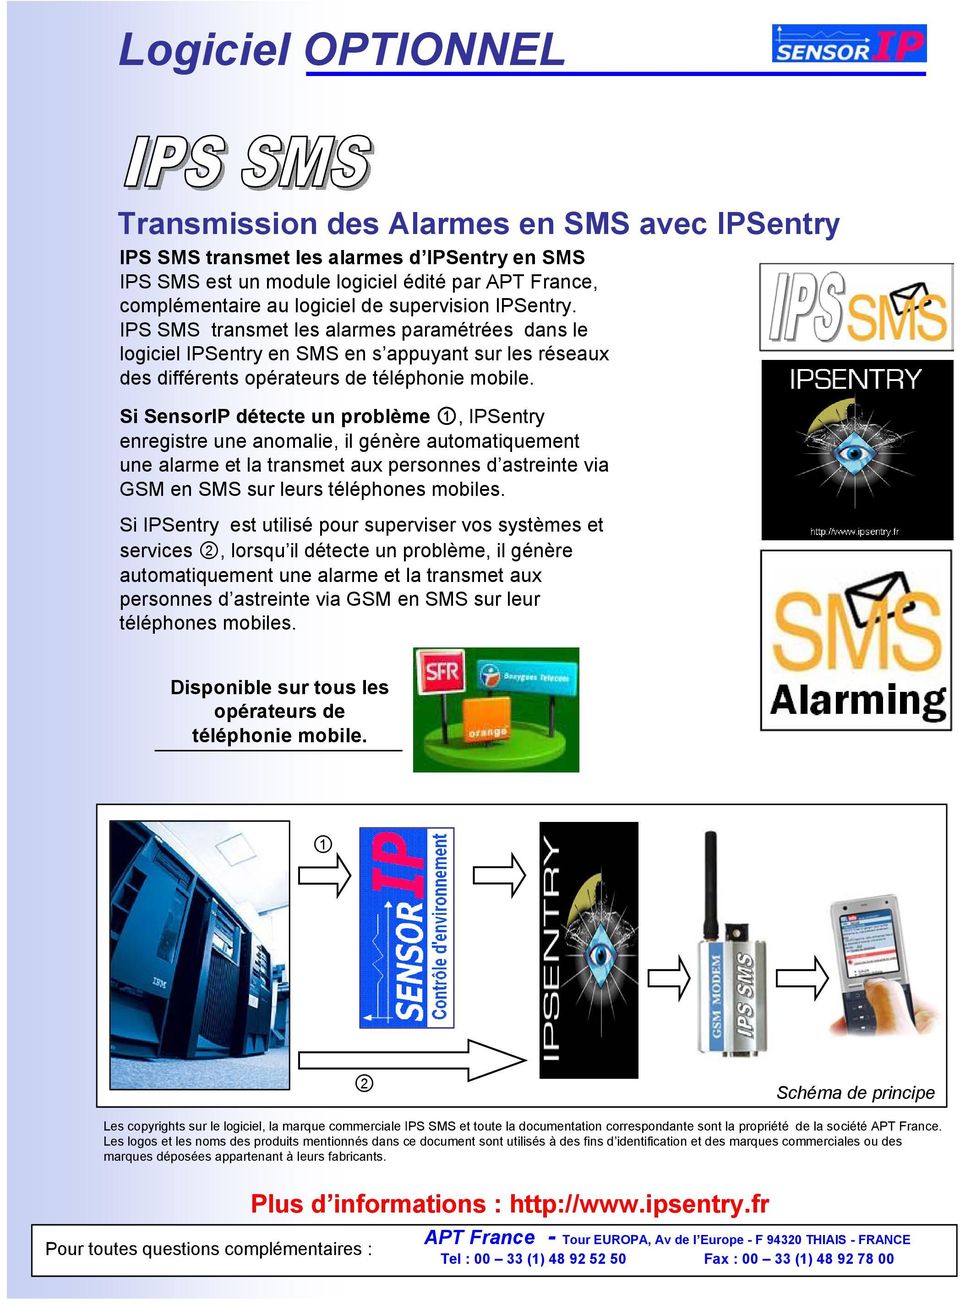 Si SensorIP détecte un problème 1, IPSentry enregistre une anomalie, il génère automatiquement une alarme et la transmet aux personnes d astreinte via GSM en SMS sur leurs téléphones mobiles.